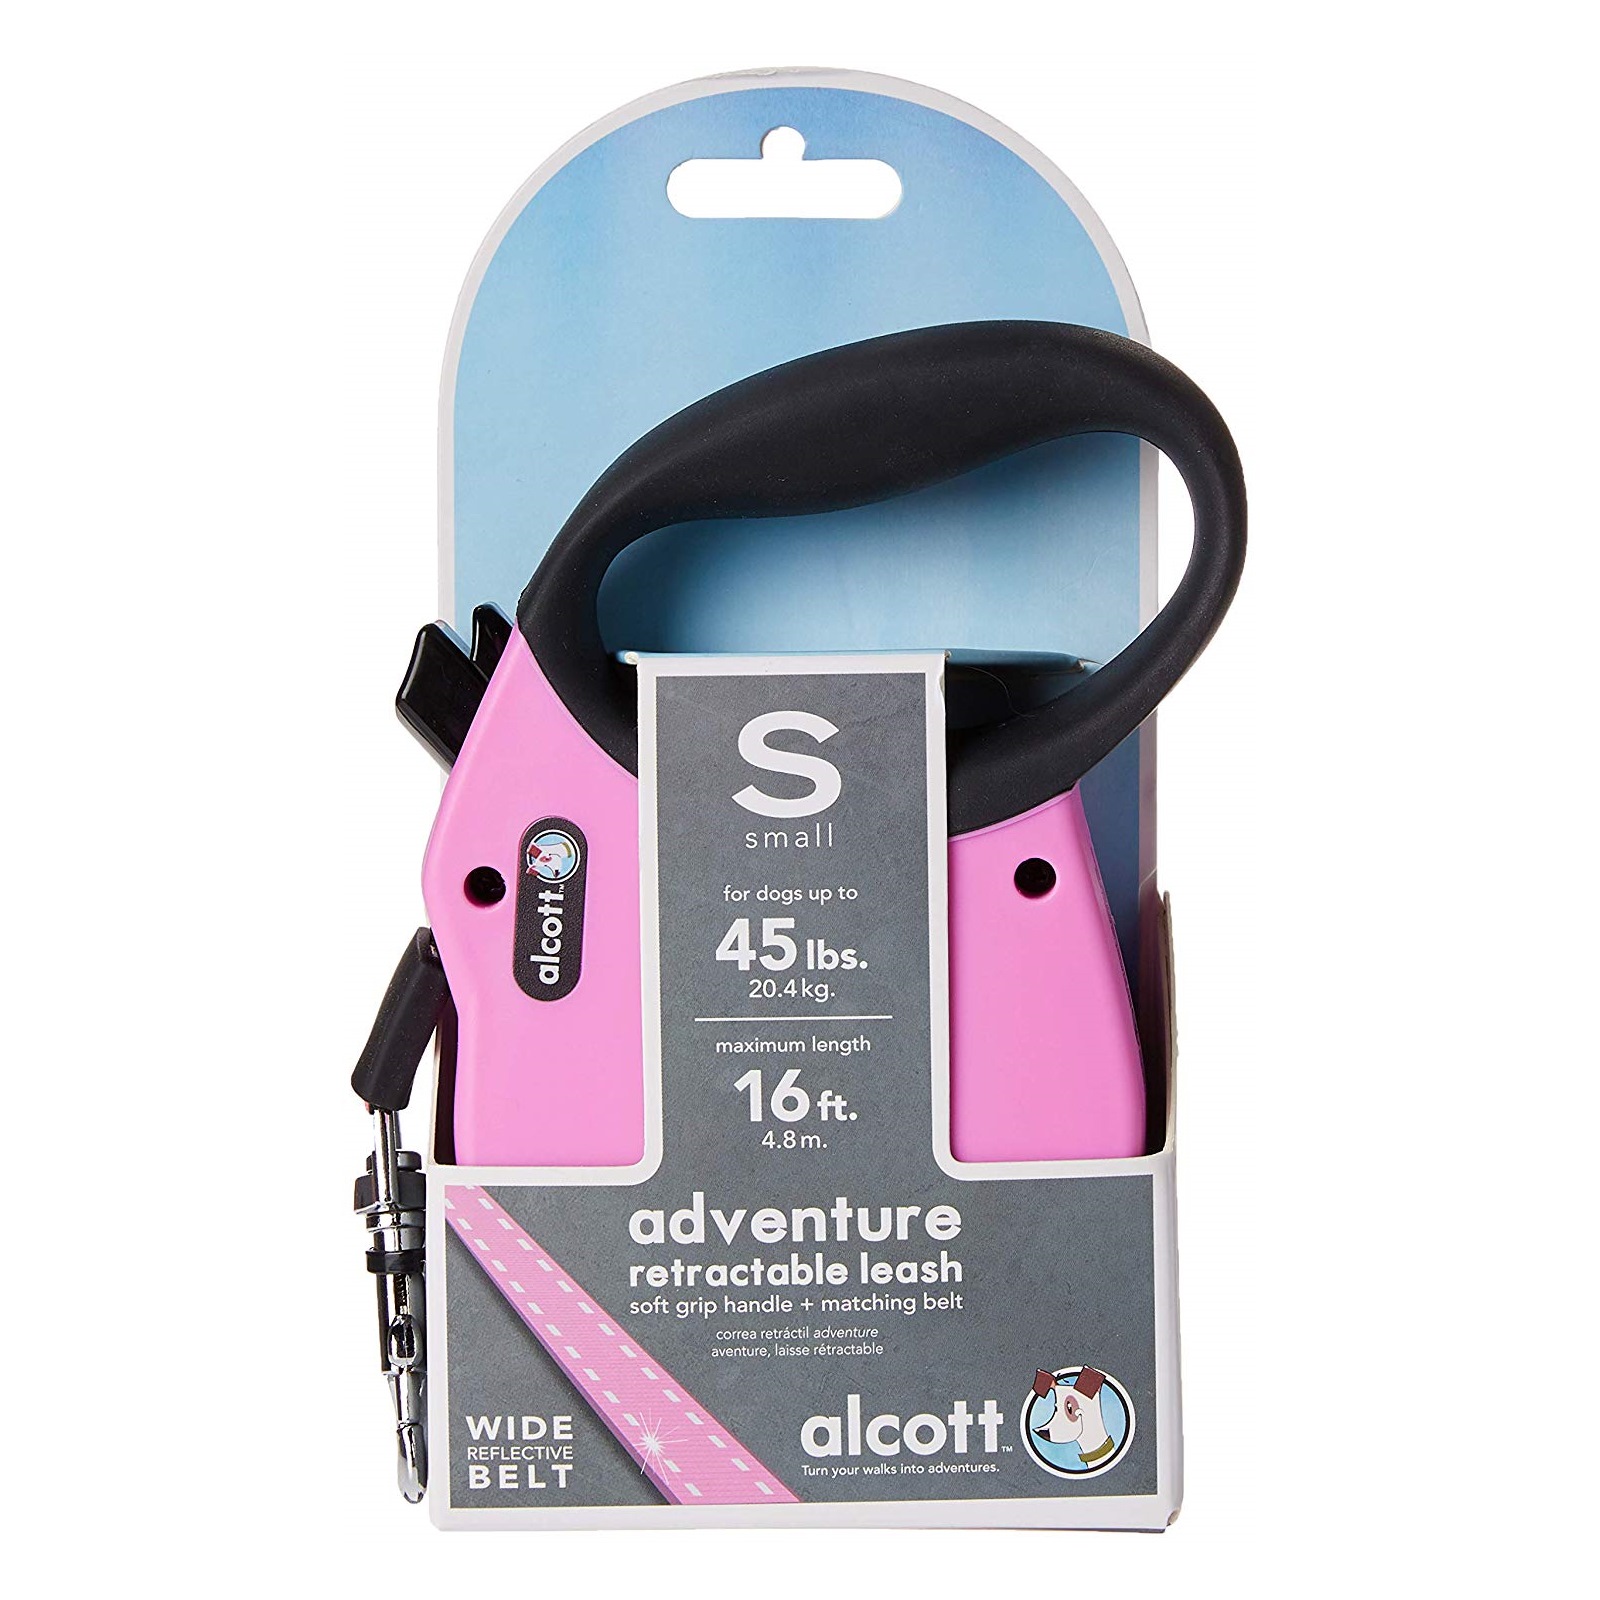 Alcott Flexi-ble Adventure Retractable Tape Dog Leash - Pink image 2